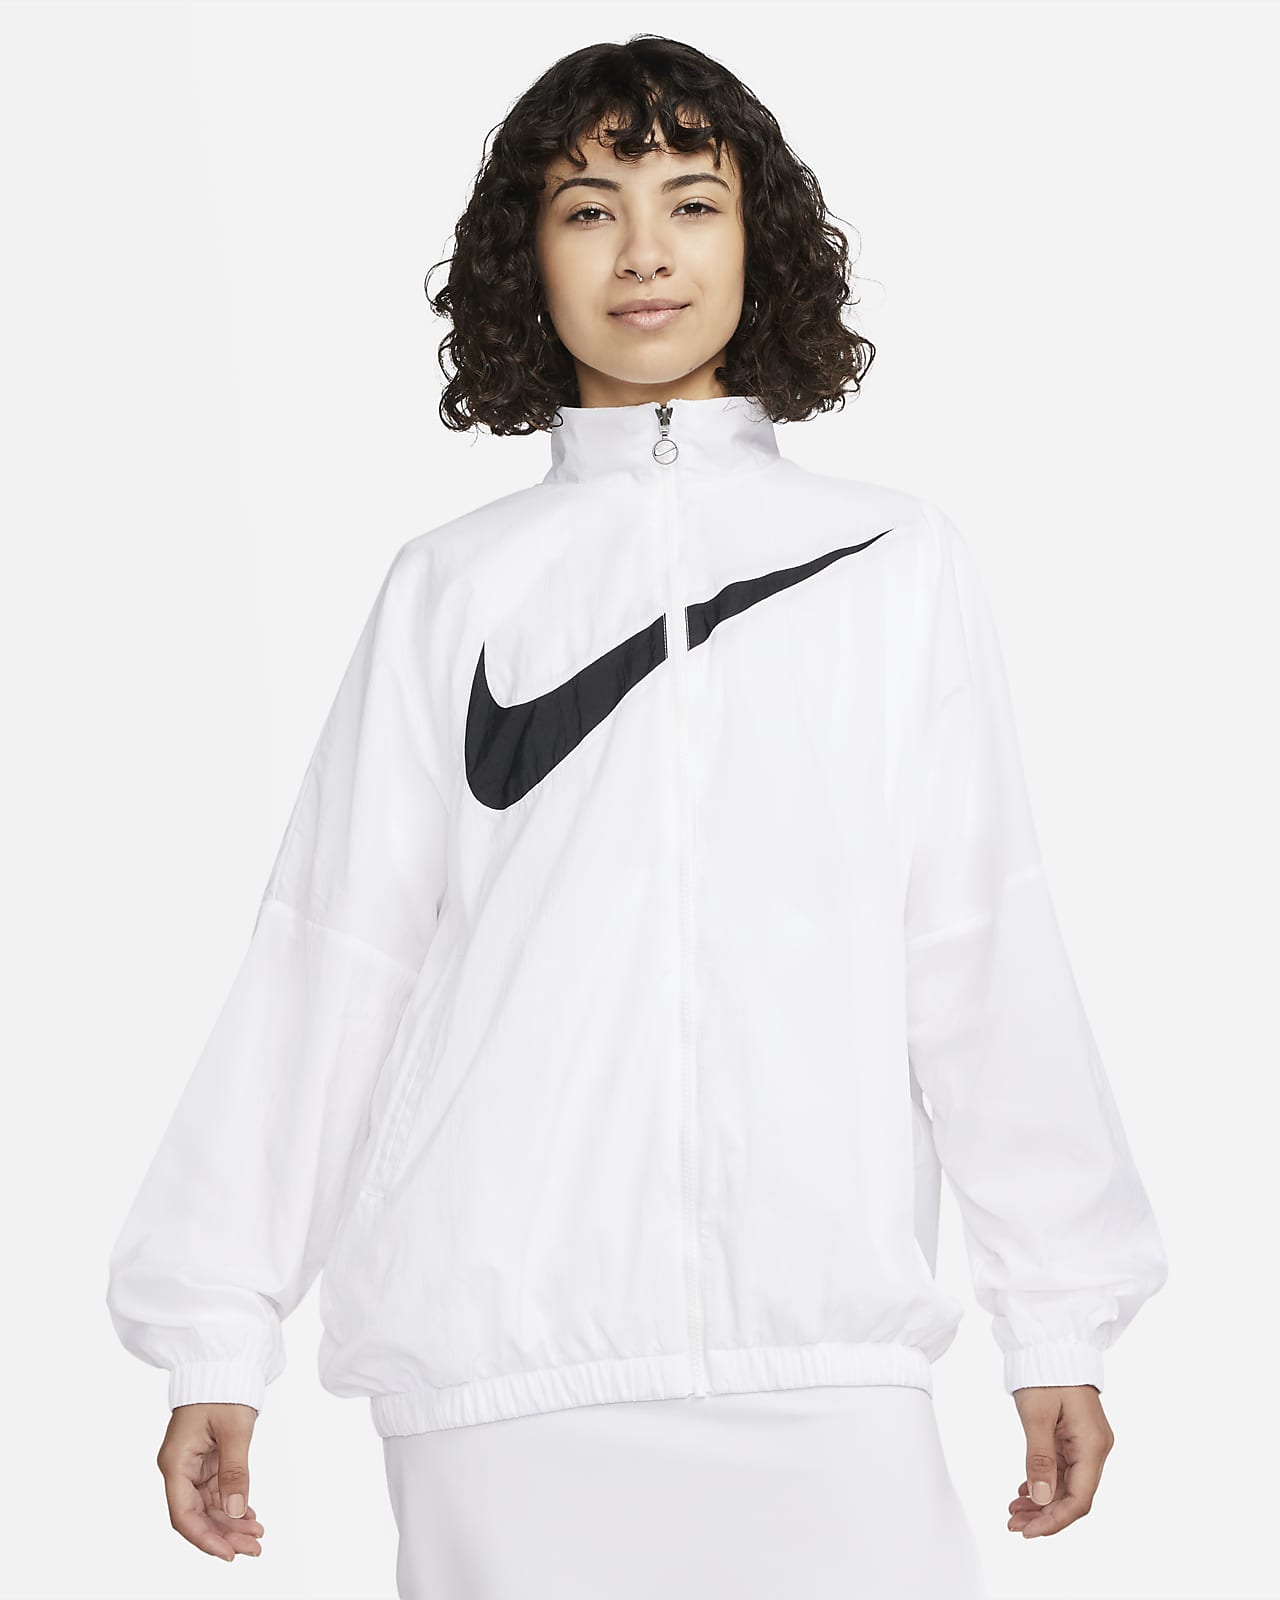 Scorch Ga wandelen Bediening mogelijk Nike Sportswear Essential Women's Woven Jacket. Nike.com